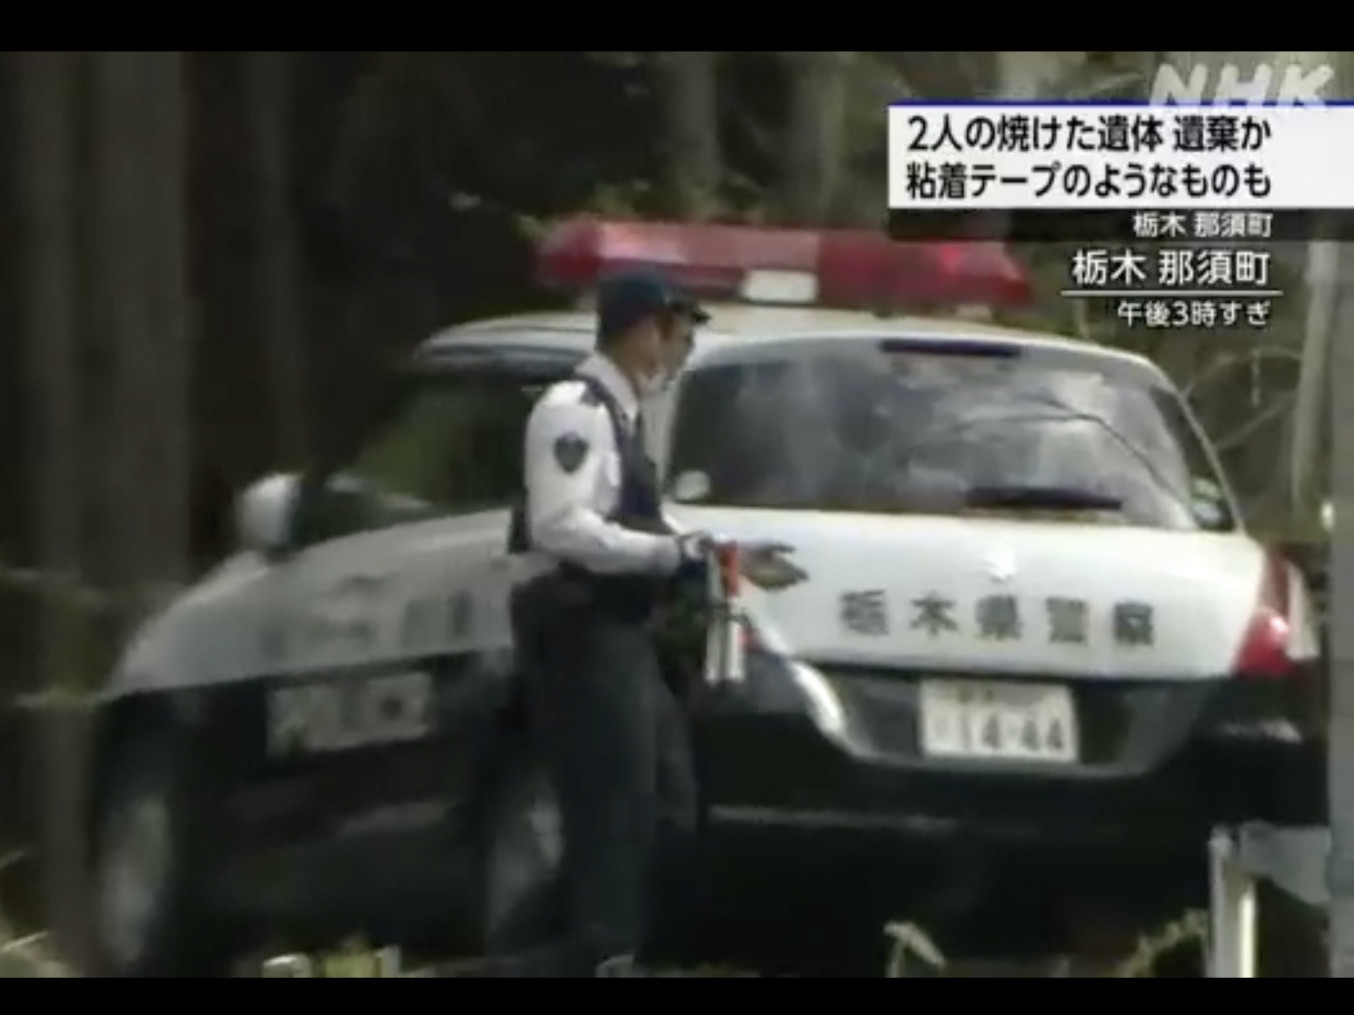 Японы Насу хотын ууланд хоёр хүн шатаасан хэргийг 25 настай залуу үйлдсэн бөгөөд "танилынхаа гуйлтаар хийсэн" гэж мэдүүлжээ